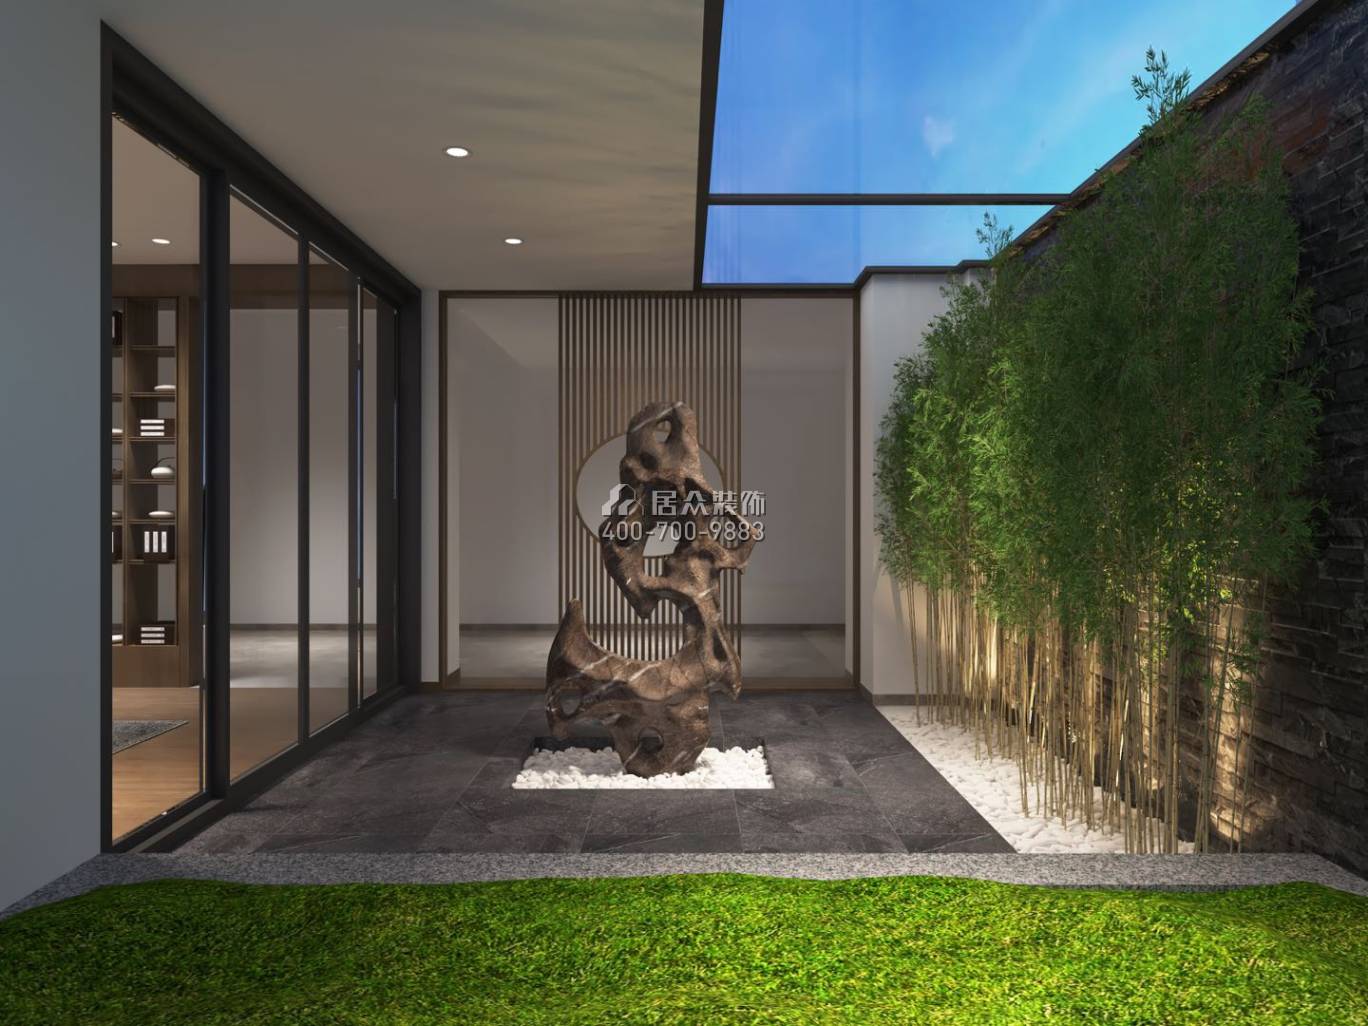 中信紅樹灣-三期638平方米現代簡約風格復式戶型花園裝修效果圖